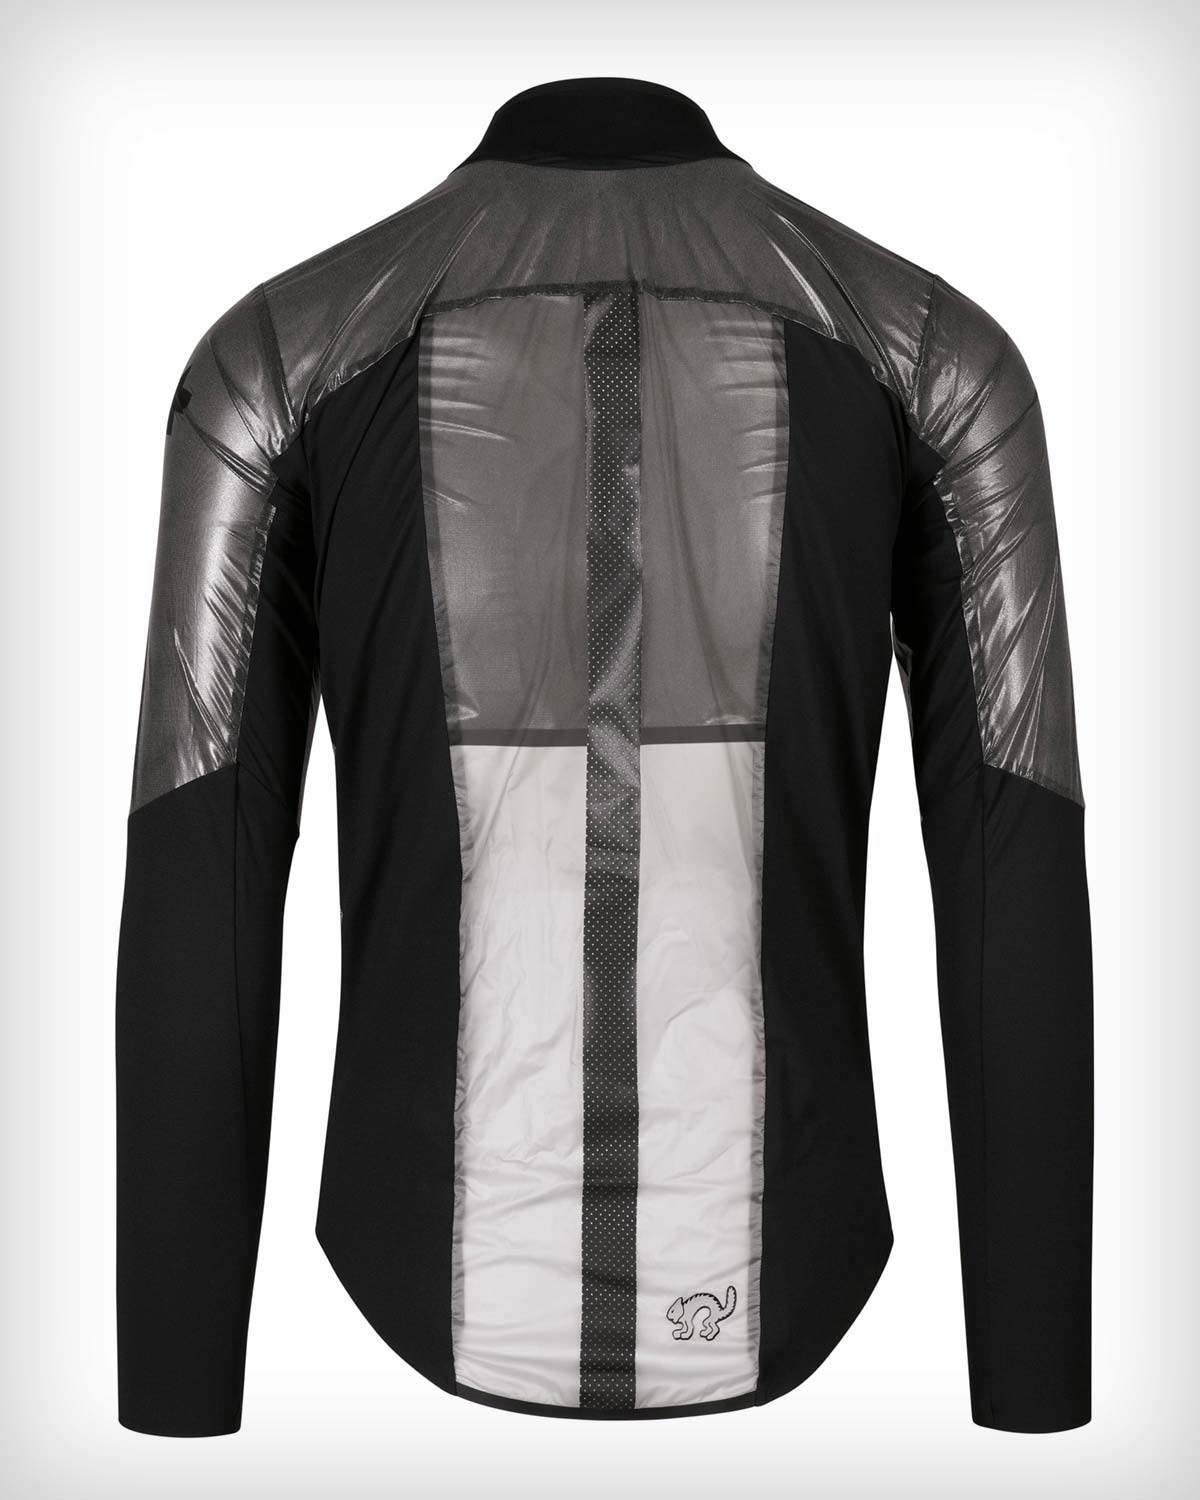 En TodoMountainBike: Assos Equipe RS Clima Capsule Alleycat, una chaqueta de ciclismo tan peculiar como su nombre